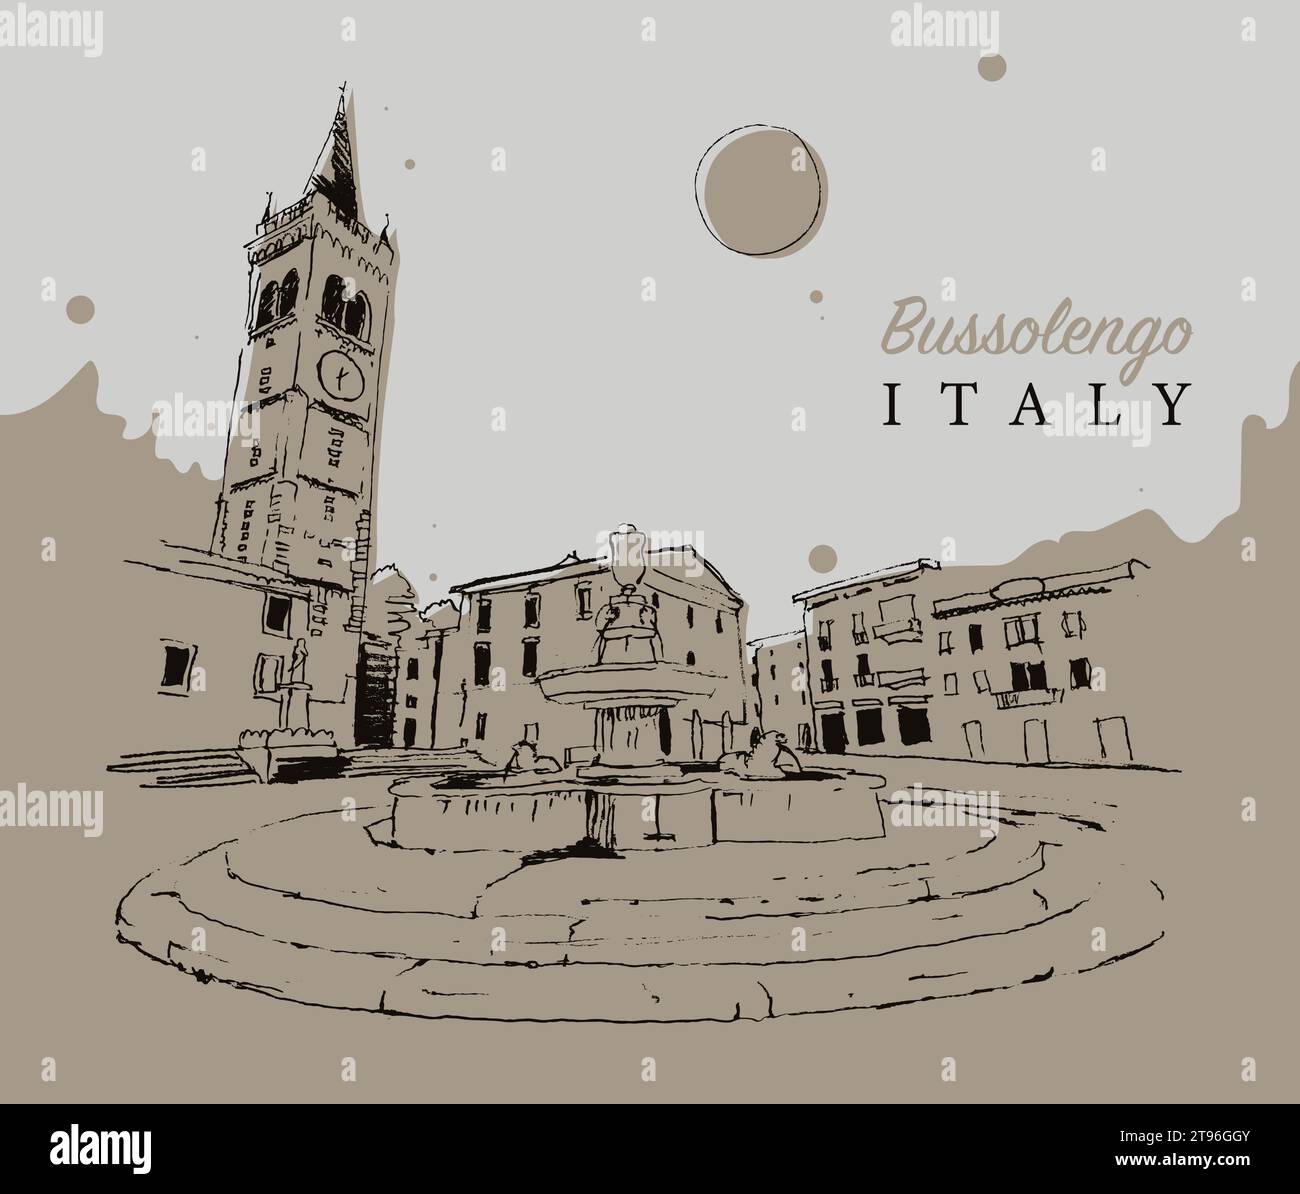 Illustrazione vettoriale di Bussolengo, città di Verona, provincia del Veneto, Italia. Illustrazione Vettoriale